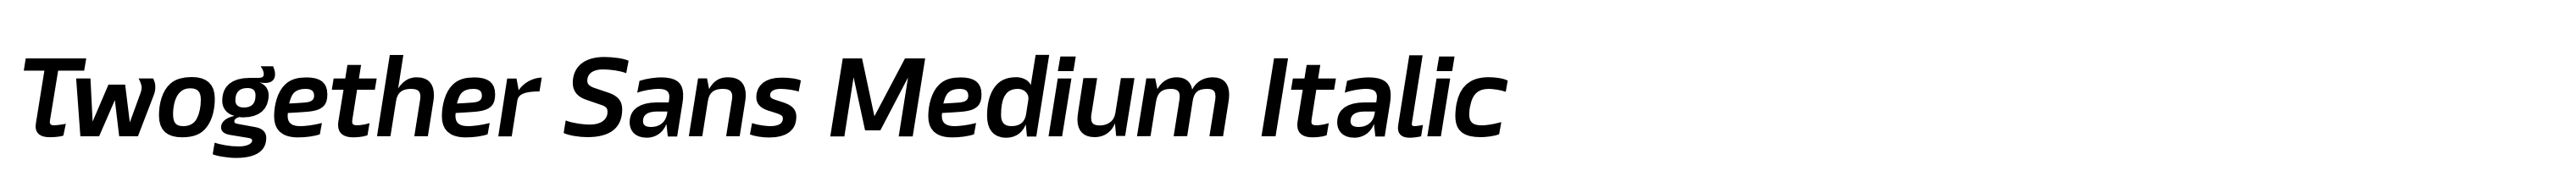 Twogether Sans Medium Italic